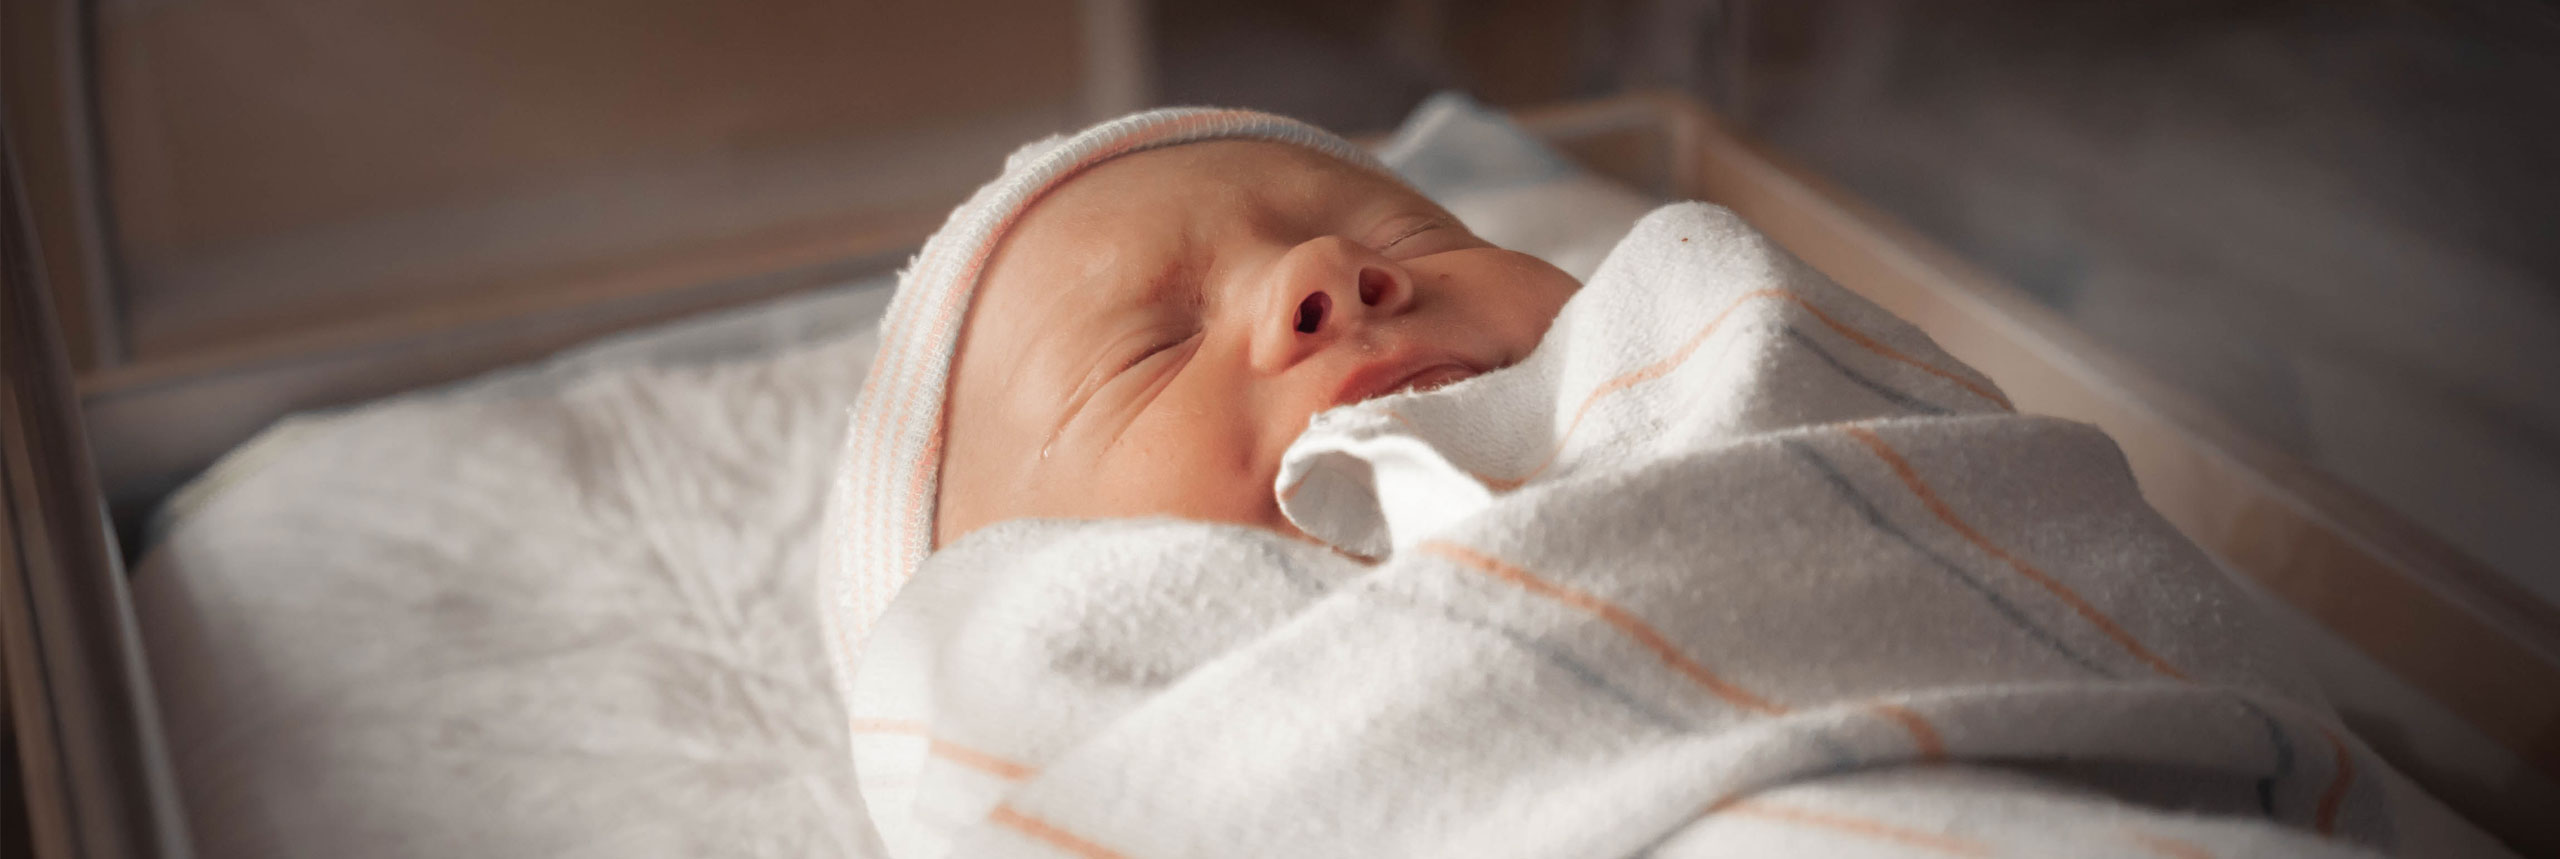 20 messages de félicitation pour la naissance d'un bébé - Blog